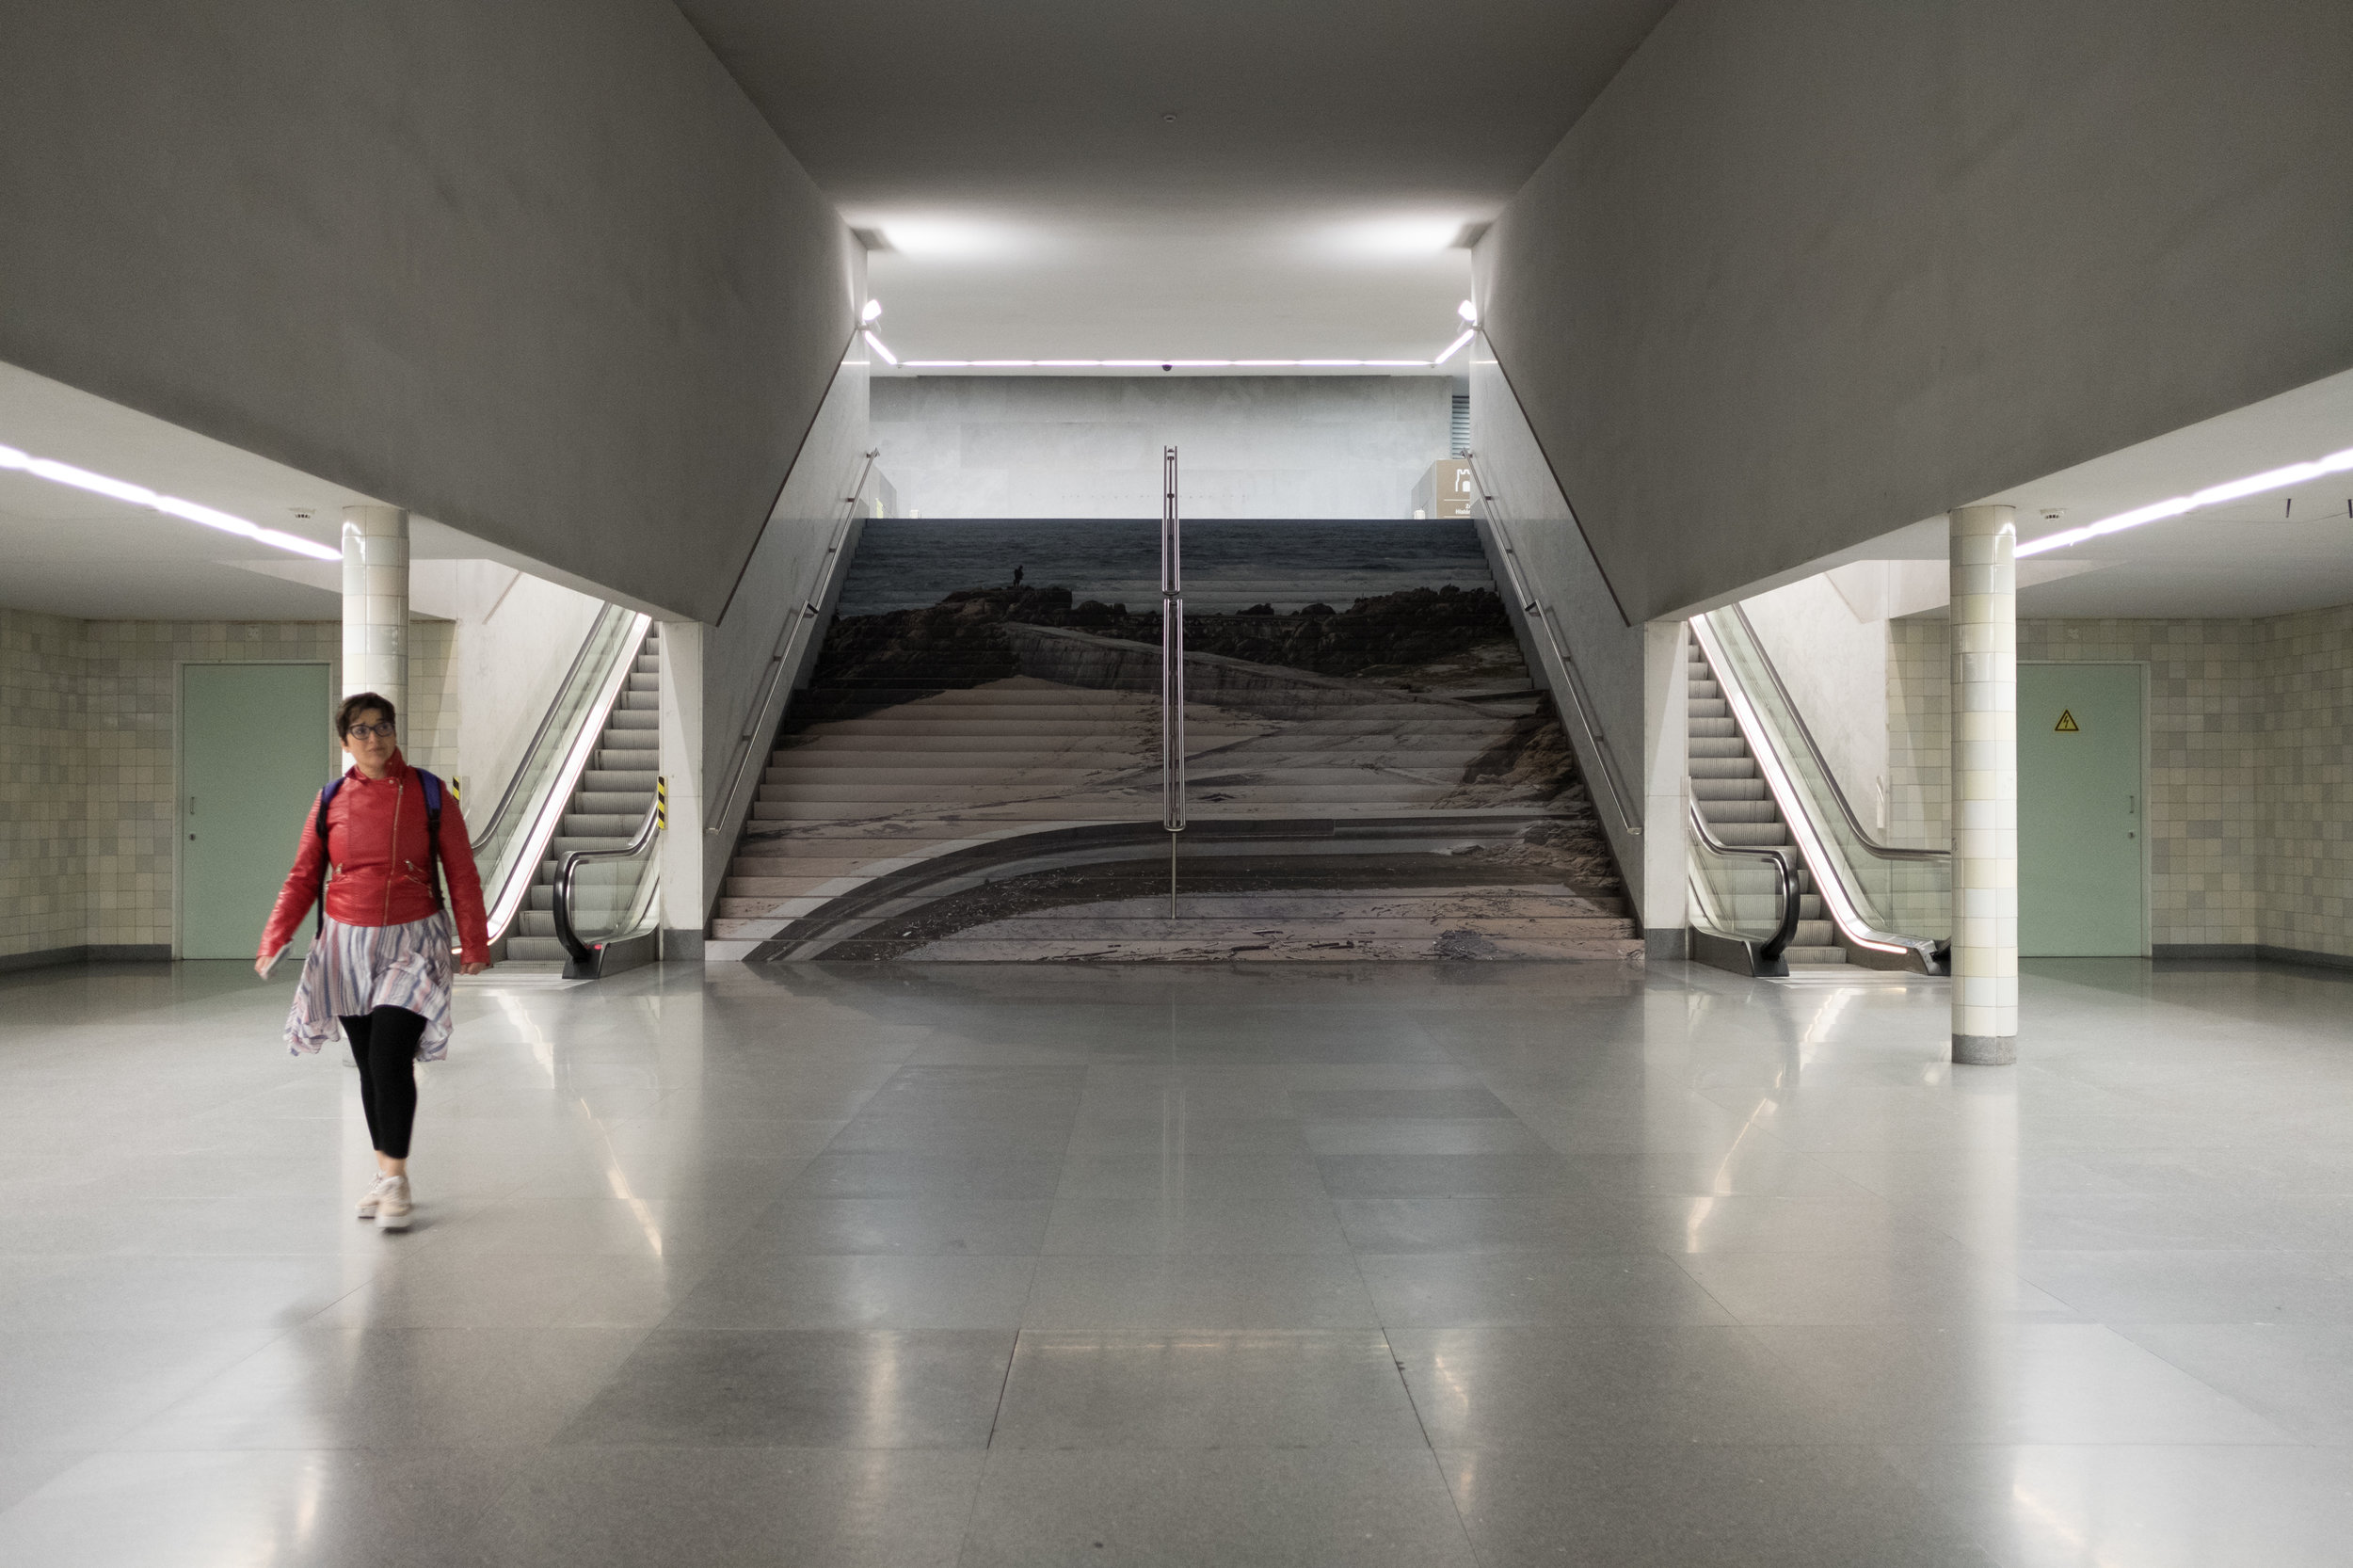  Visita Guiadas com Autores: Visual Spaces of Change / Ci.CLO Bienal Fotografia do Porto 2019: Estações de Metro da Avenida dos Aliados e São Bento, Biblioteca Almeida Garrett, OASRN 